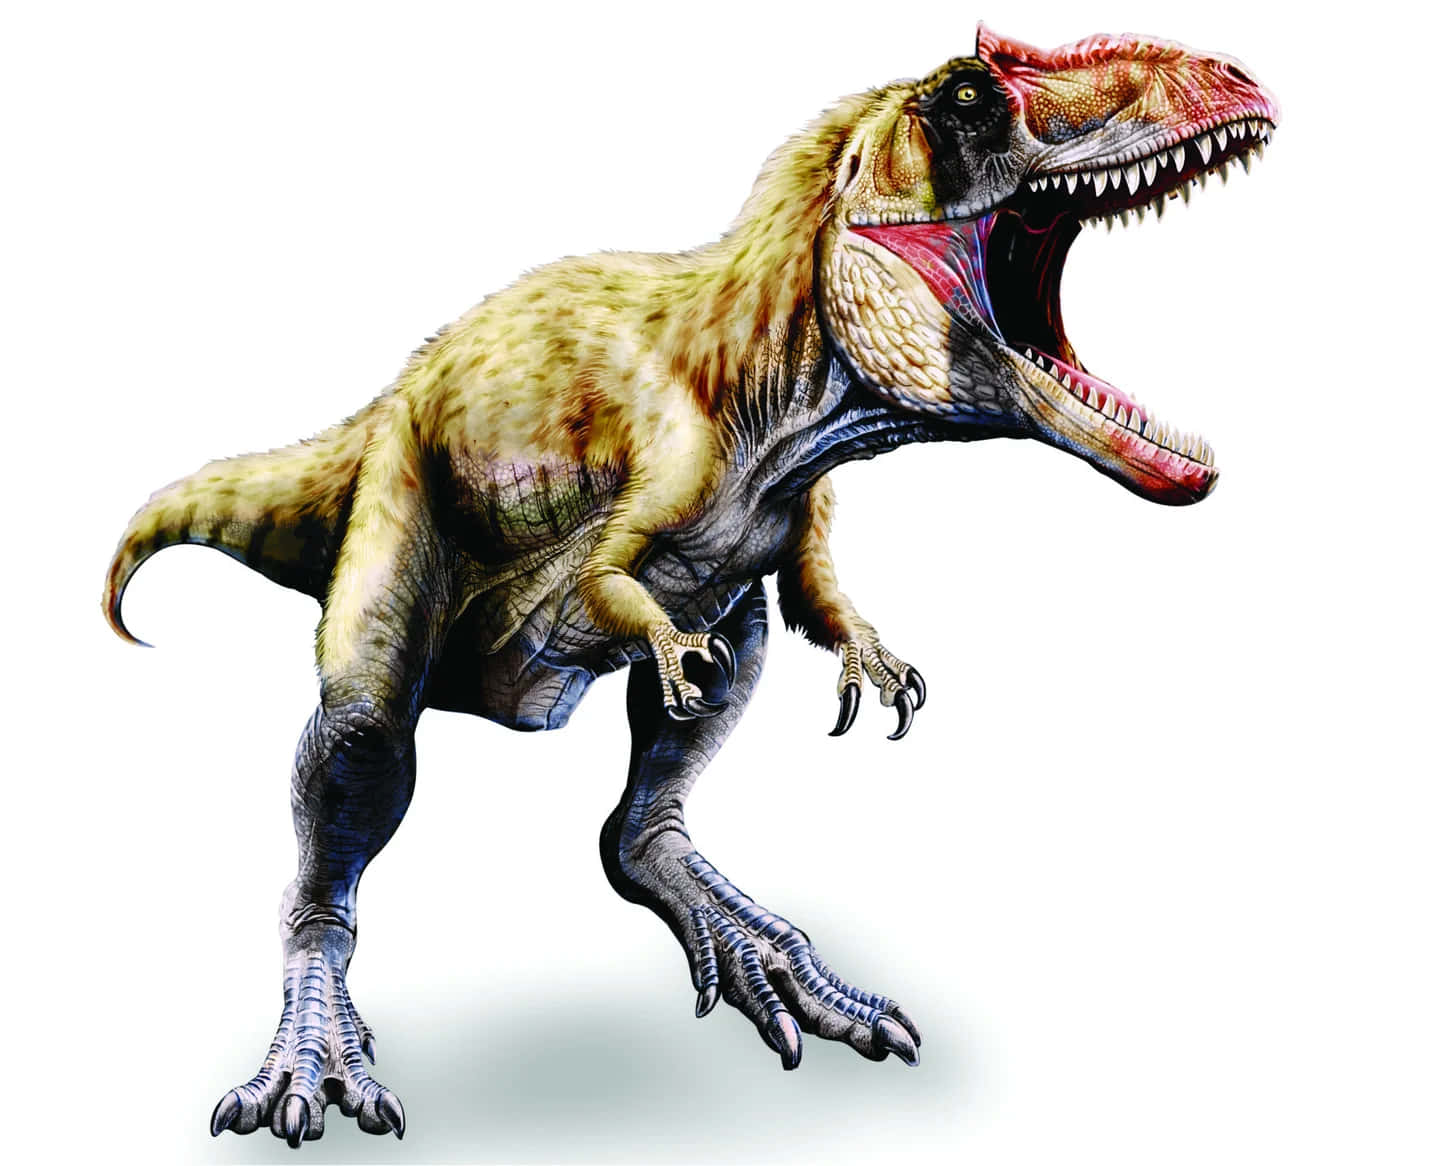 Vienemostrato Un T-rex Con La Bocca Aperta